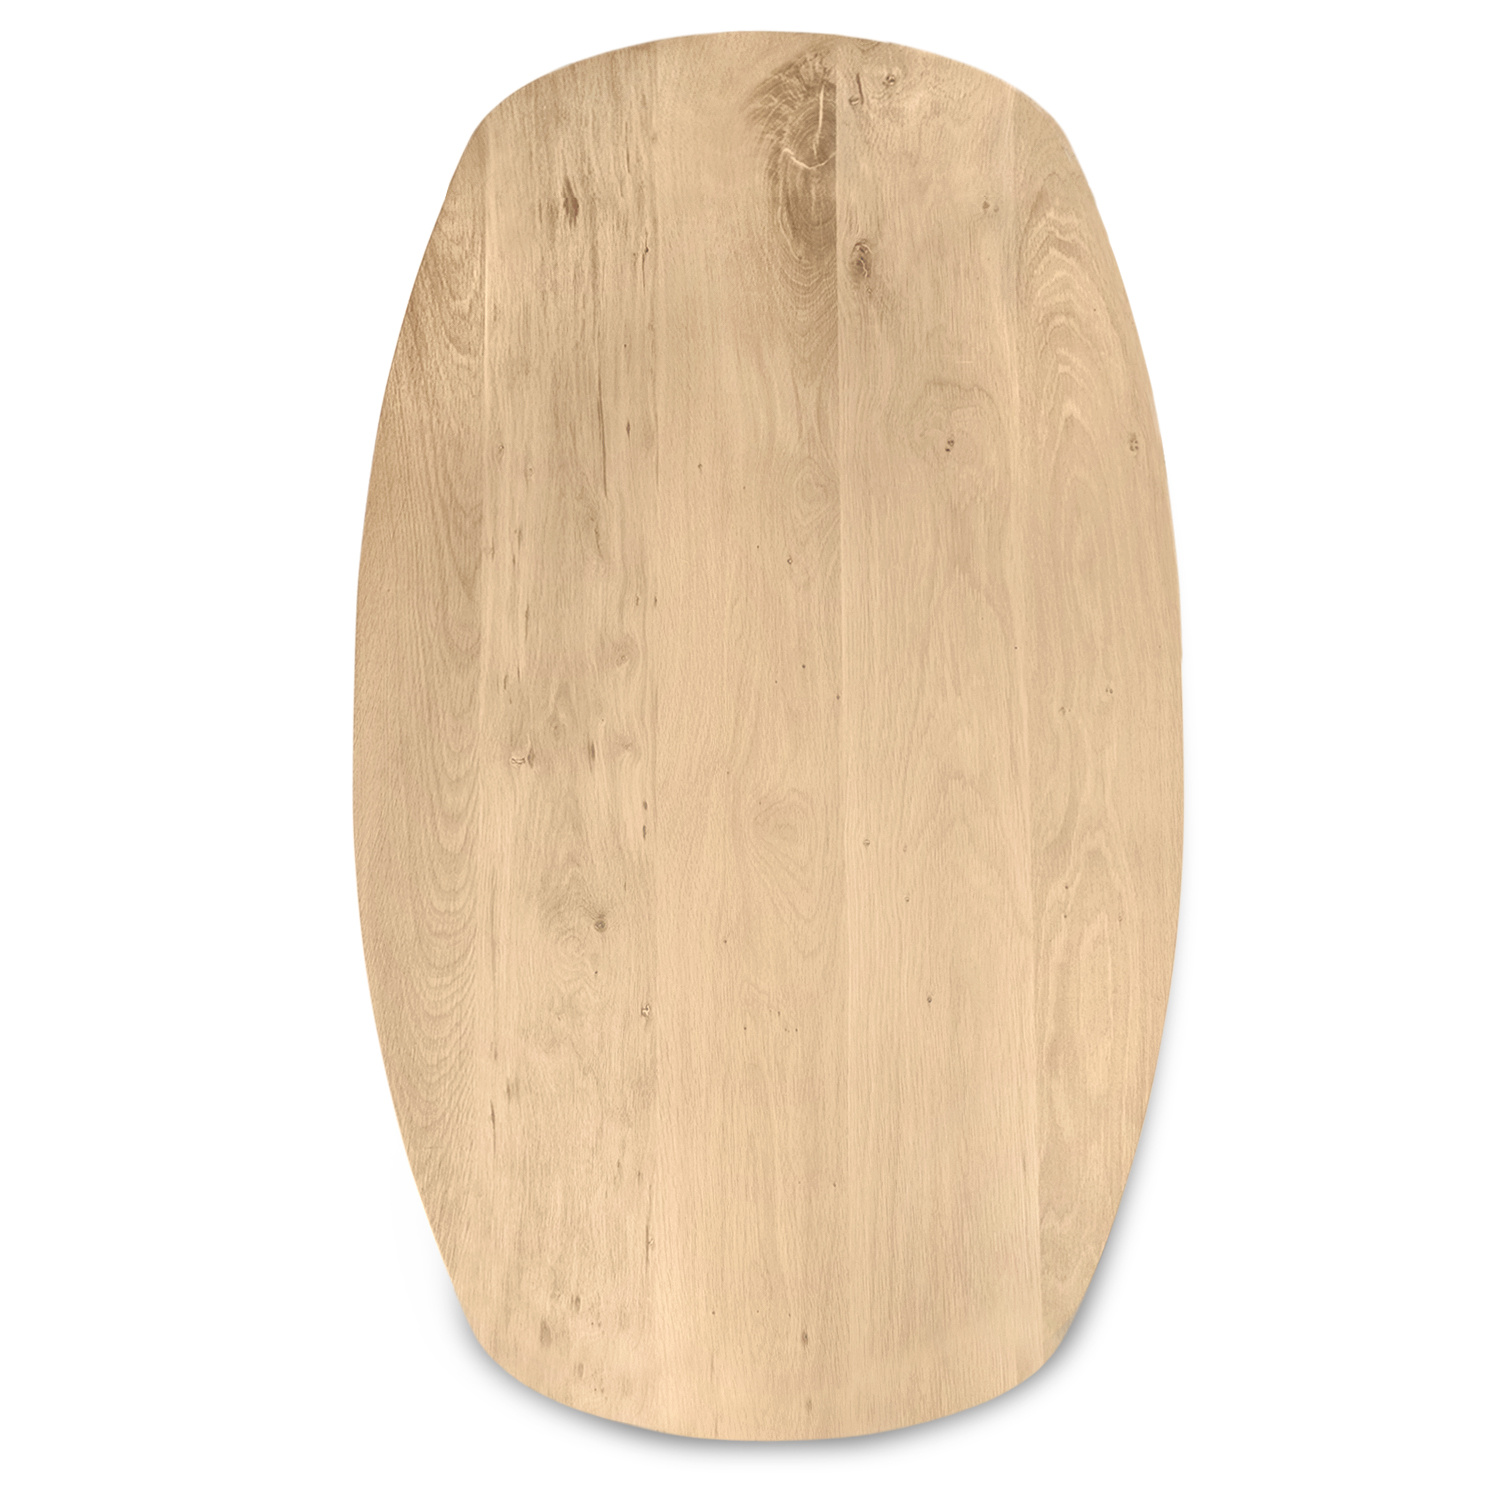  Deens ovaal eiken tafelblad op maat - 3 cm dik (1-laag) - extra rustiek Europees eikenhout - met extra brede lamellen (circa 14-20 cm)nhout - verlijmd kd 8-12% - 40-117x80-247 cm